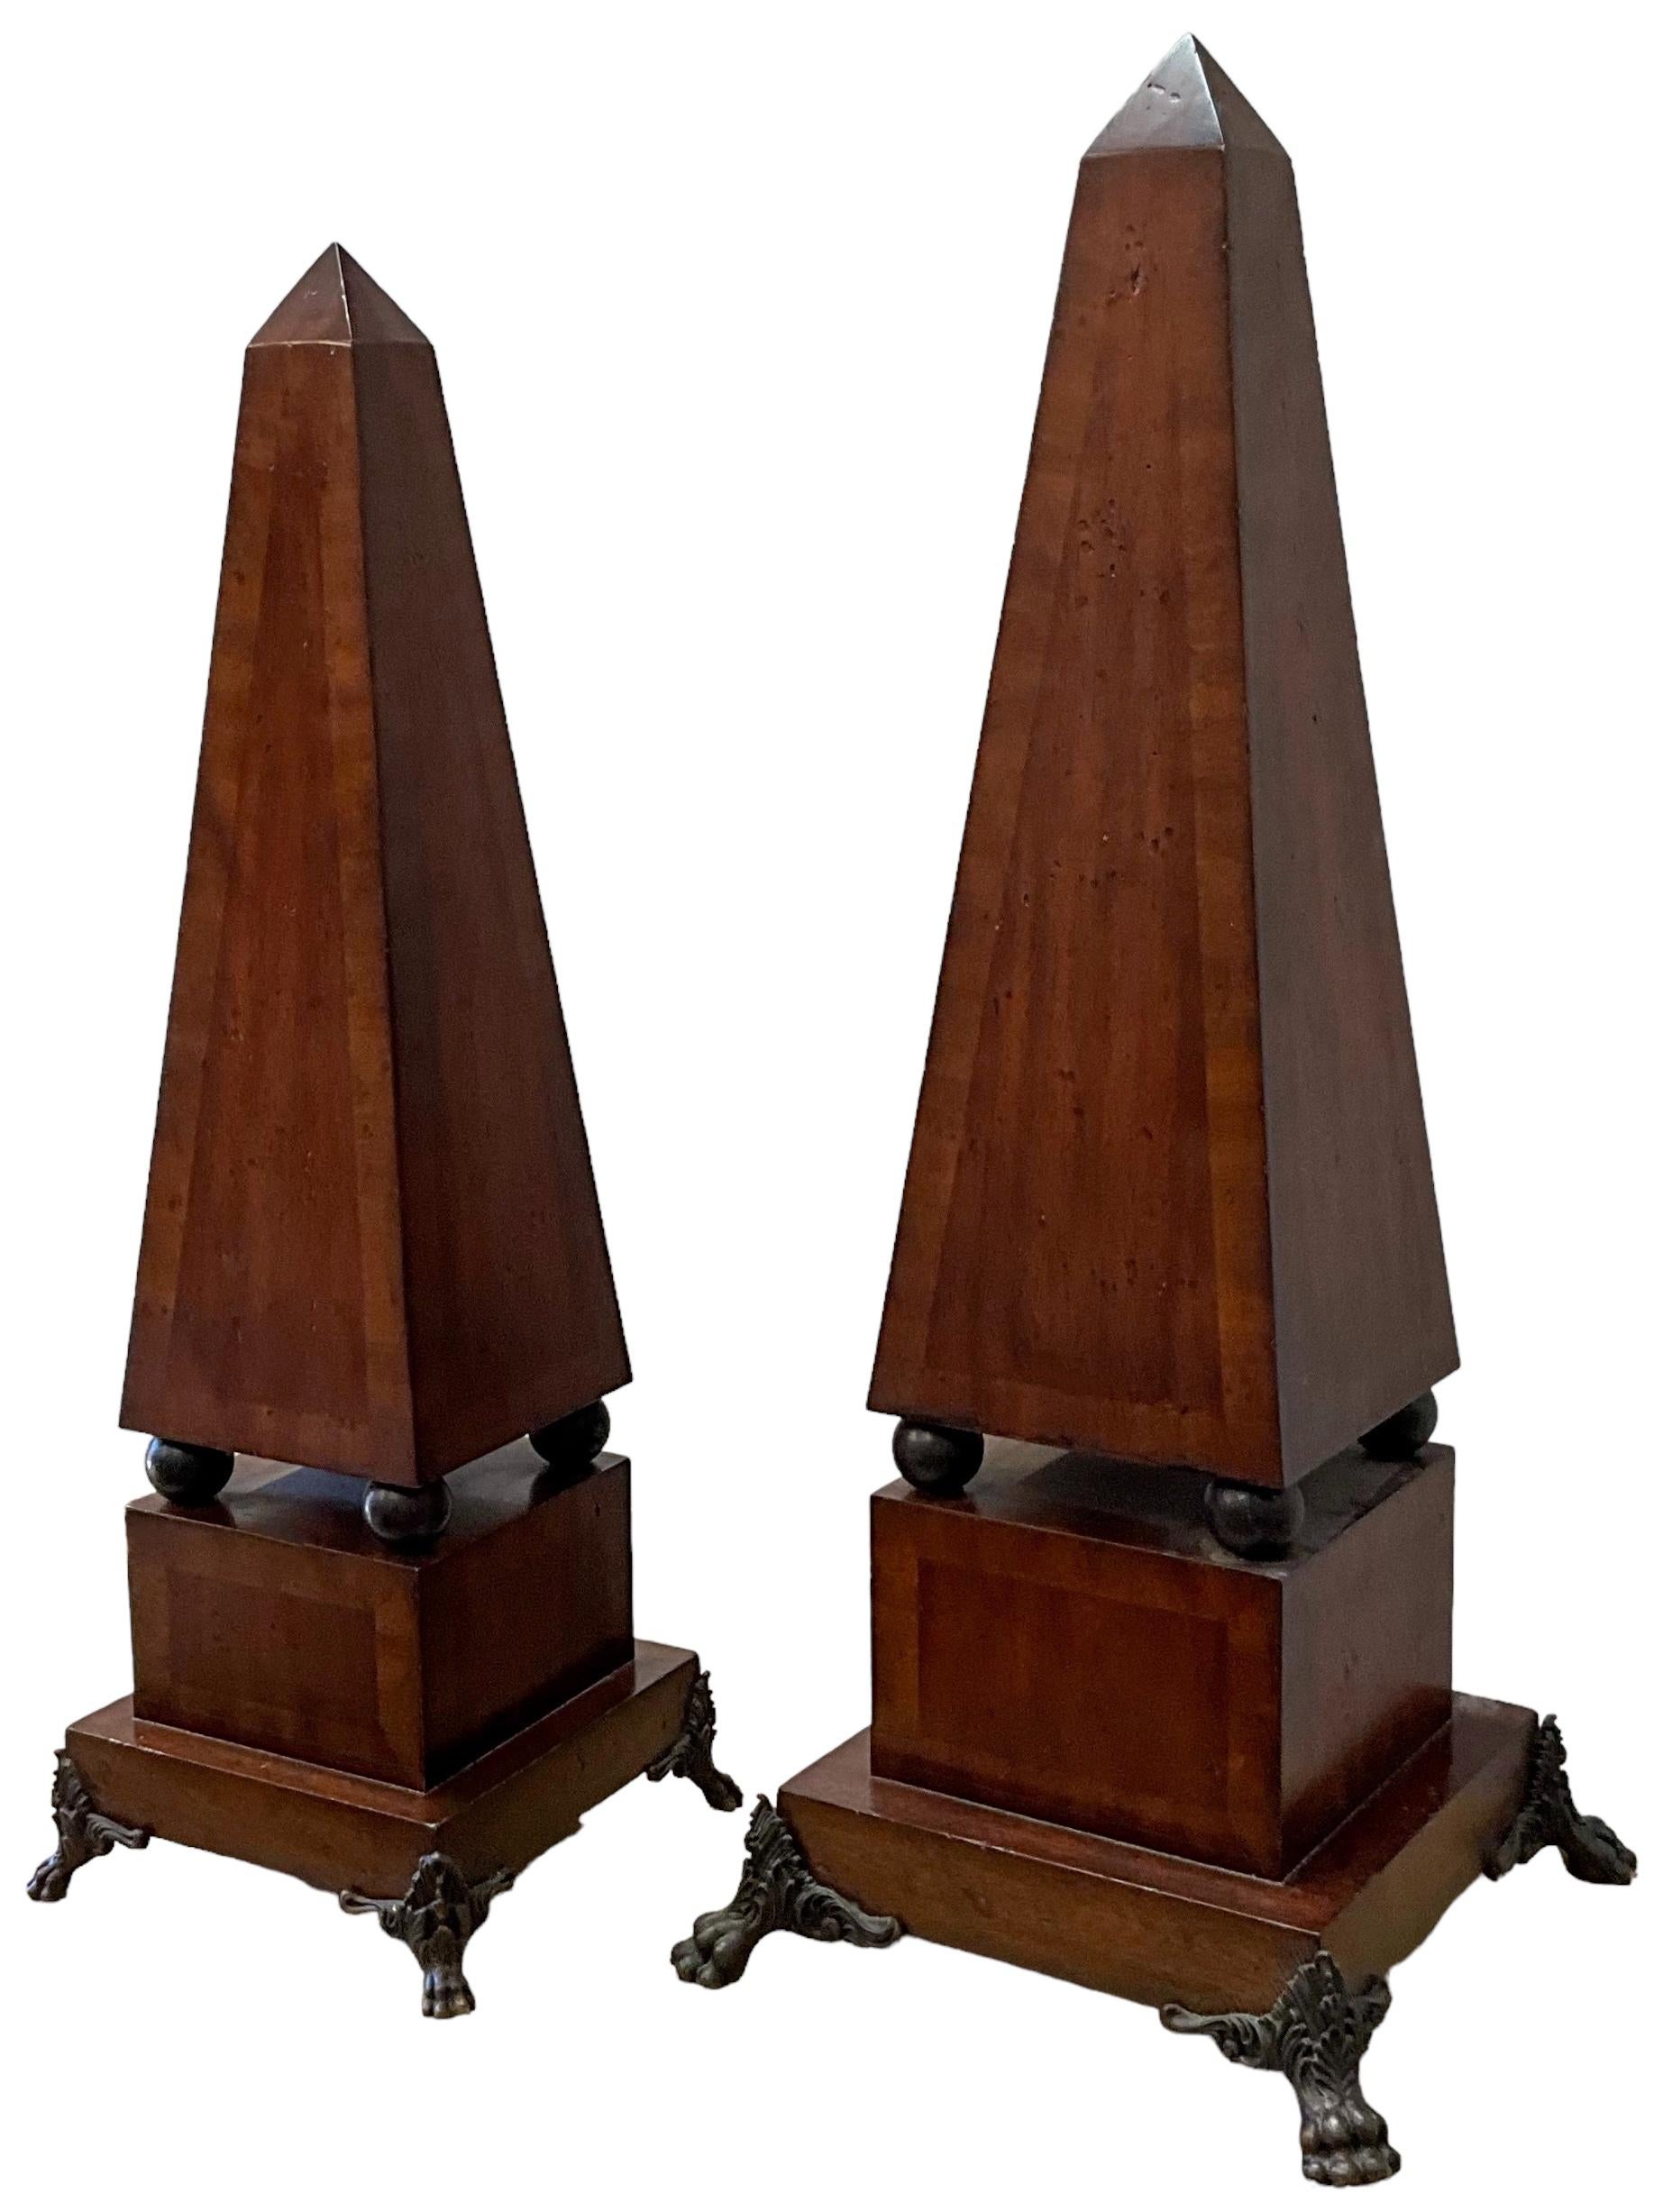 Es handelt sich um einen Satz von Obelisken aus Mahagoni im neoklassizistischen Stil mit patinierten Bronzefüßen in Pfotenform. Sie sind nicht gekennzeichnet. Der kleinere ist 7,75